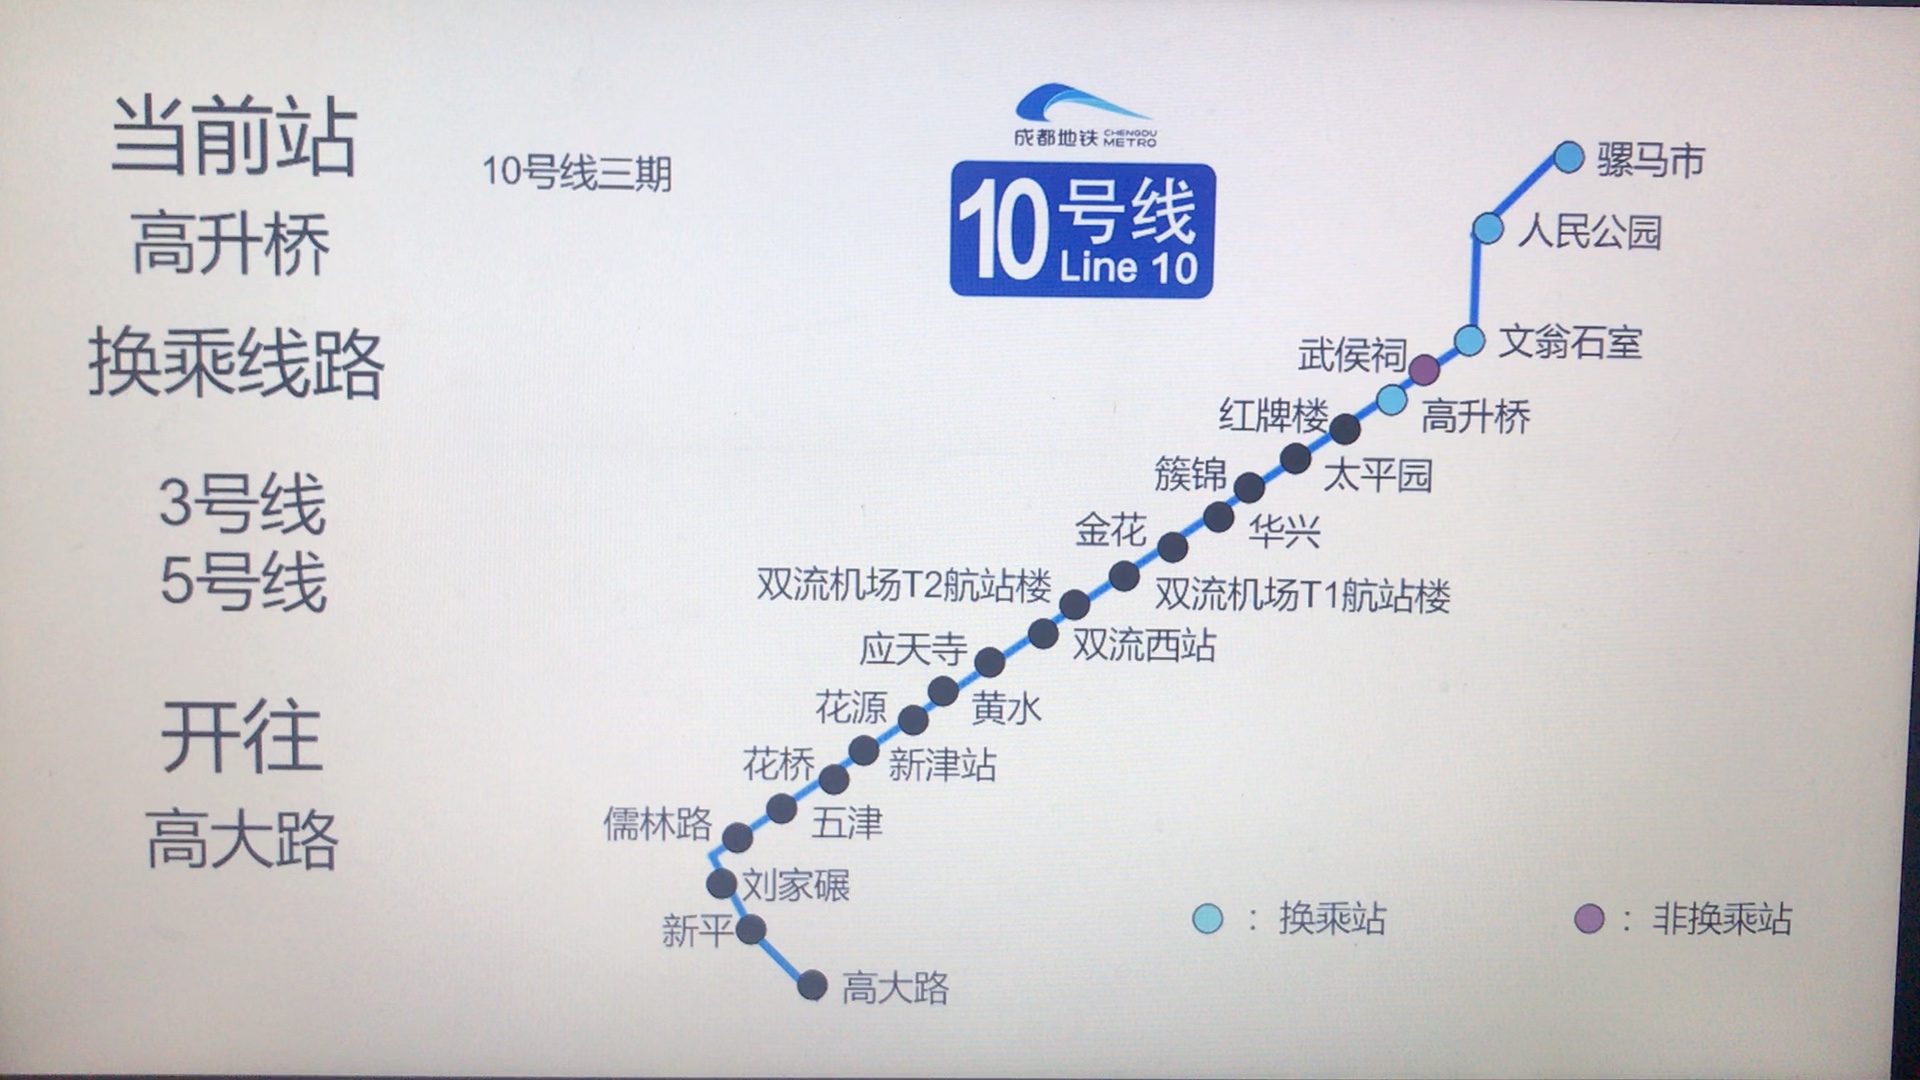 【成都地铁2050展望】第二弹 成都地铁10号线 报站 线网图